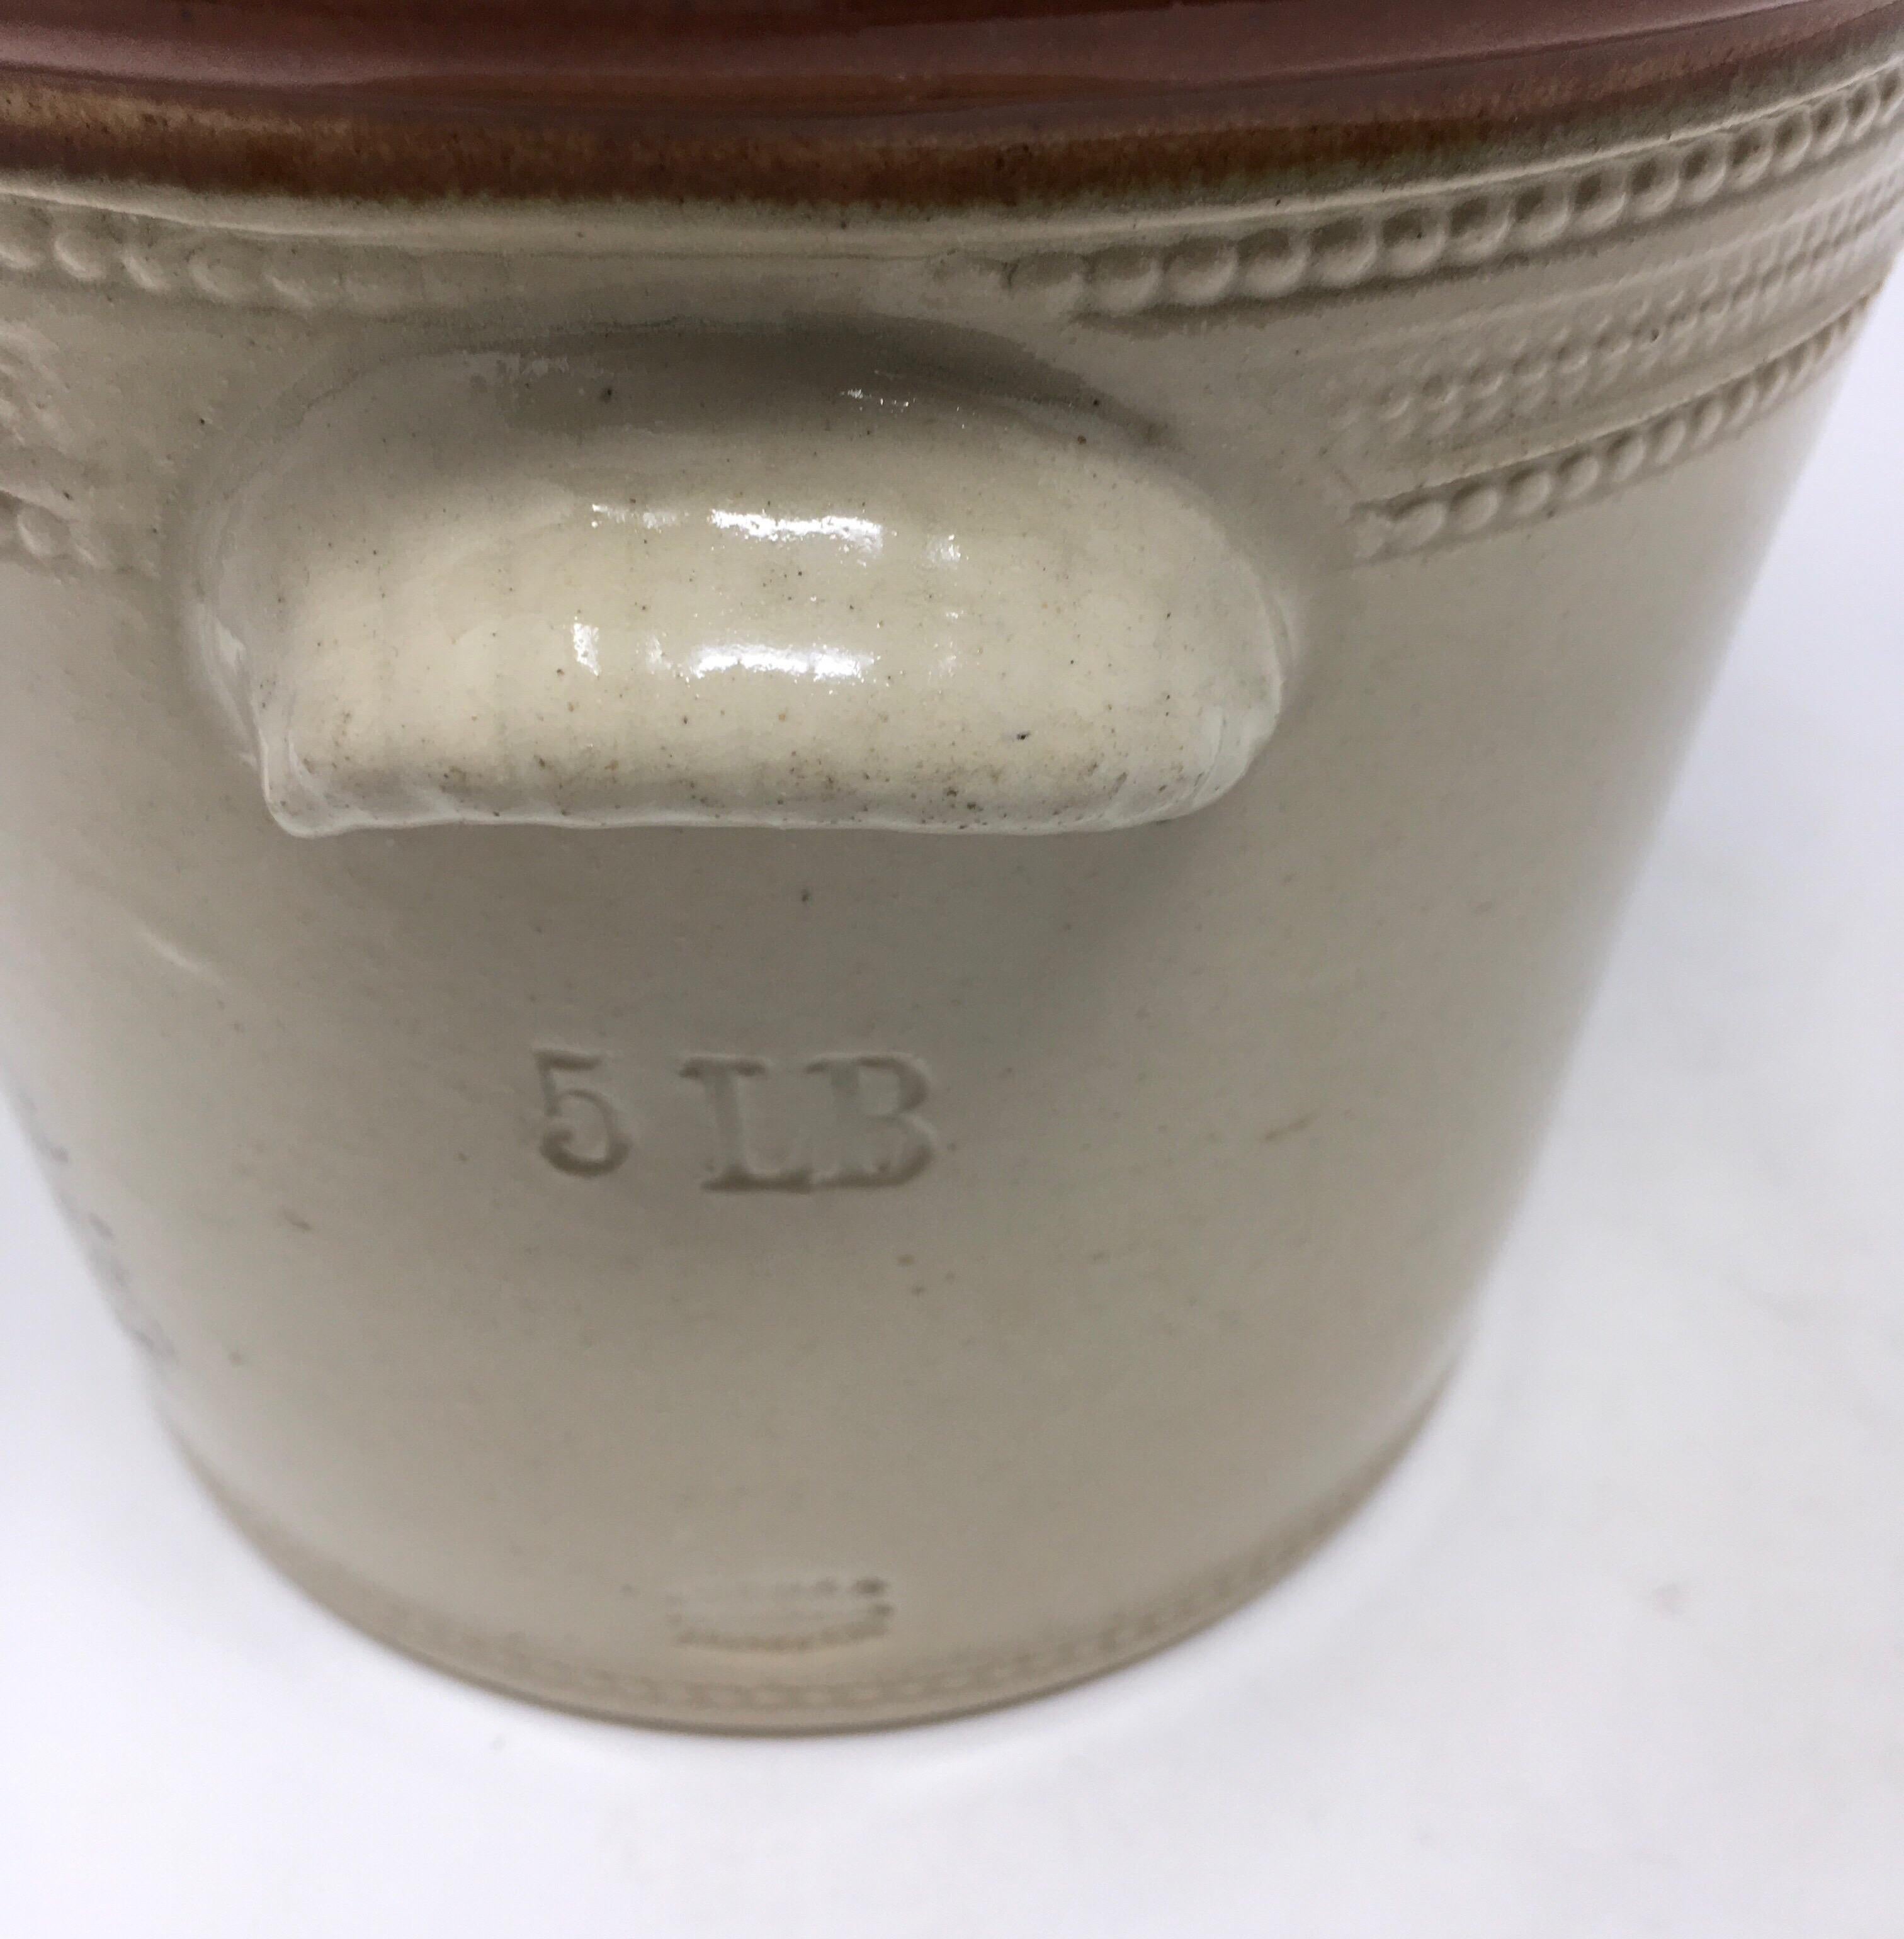 dairy crock in antique ceramic porcelain crocks